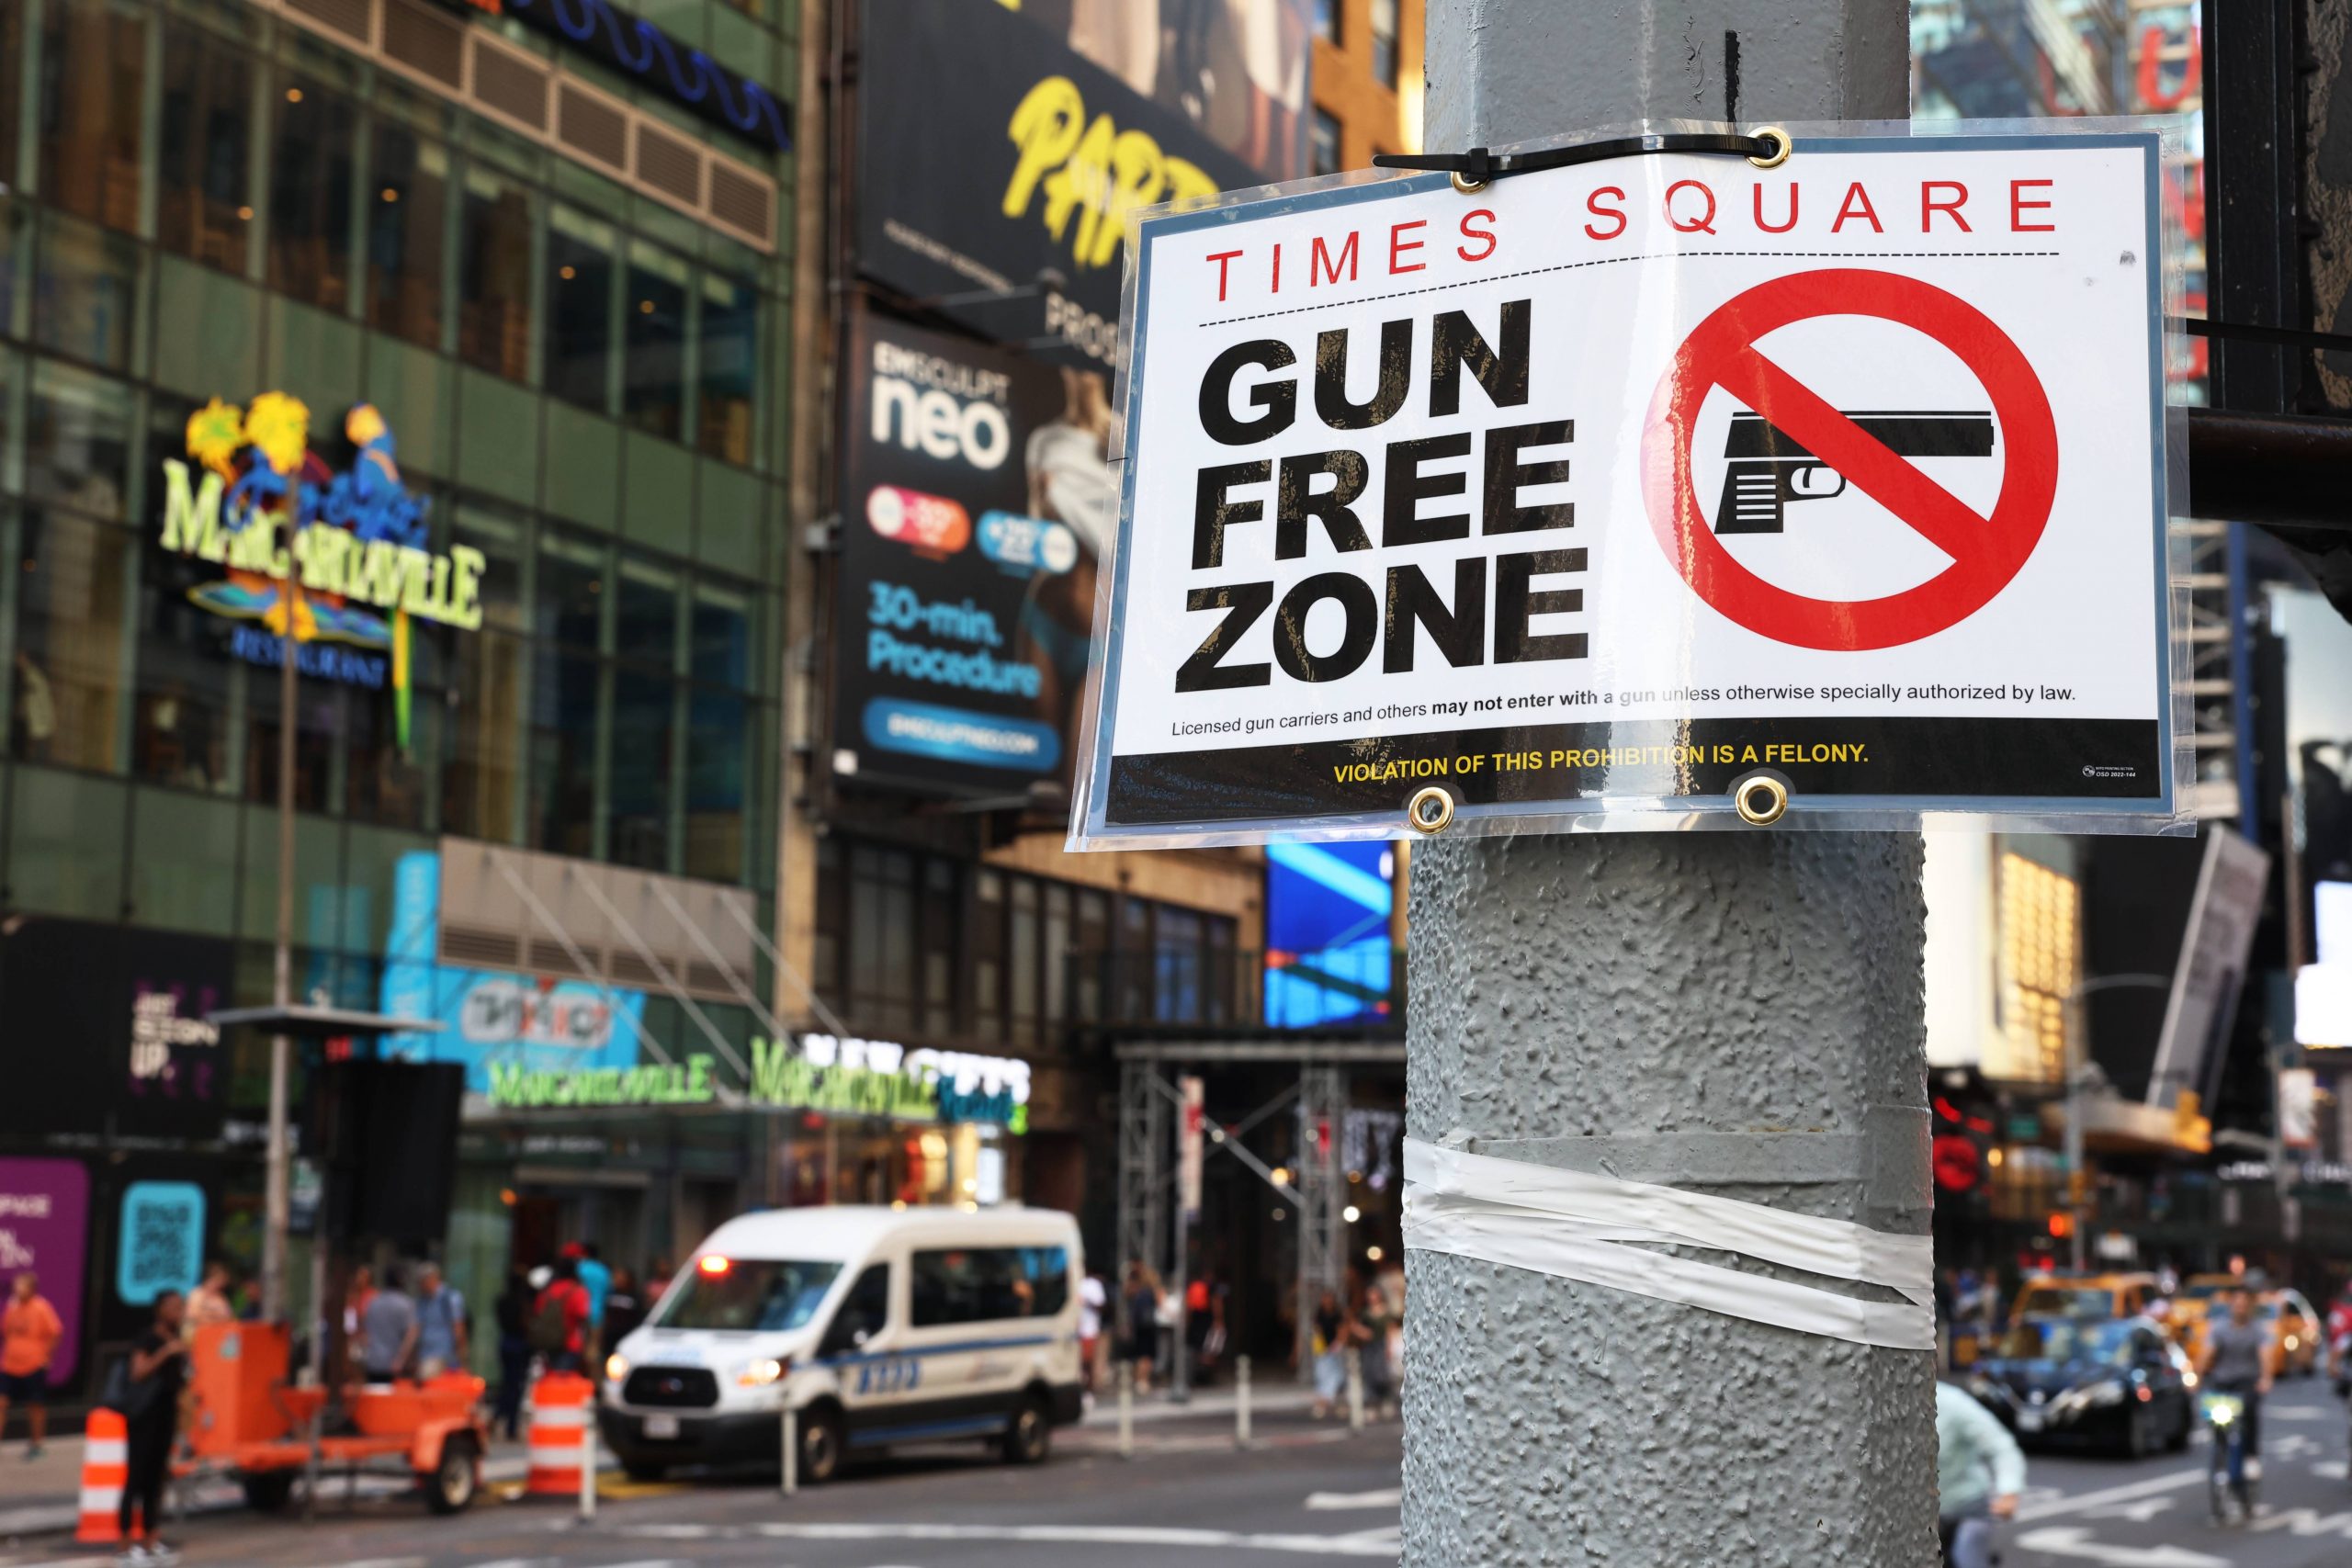 纽约州新法律周四生效 时报广场等公共场所禁止带枪